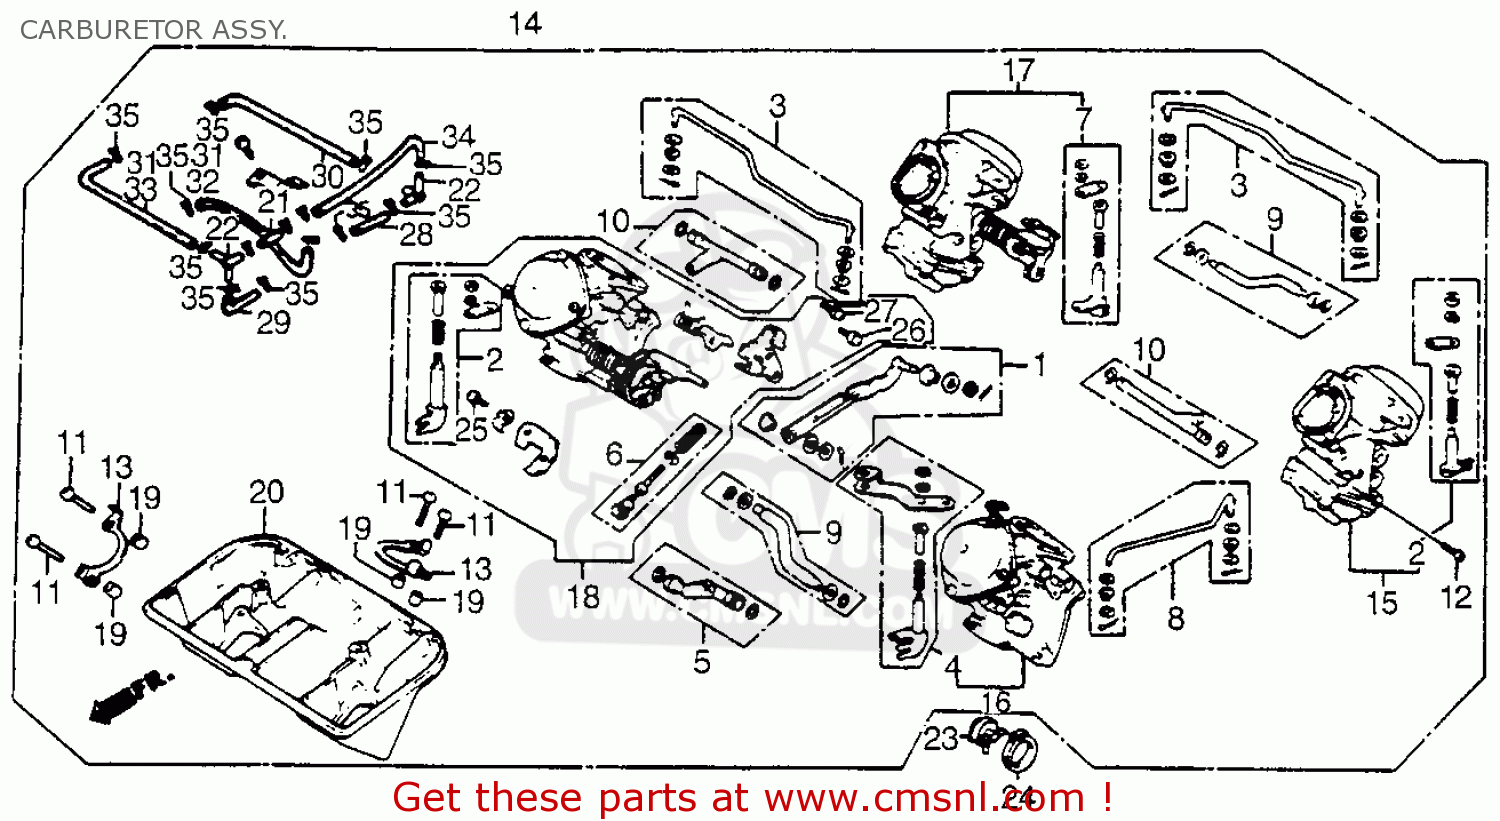 1984 Honda magna carburetor parts #6